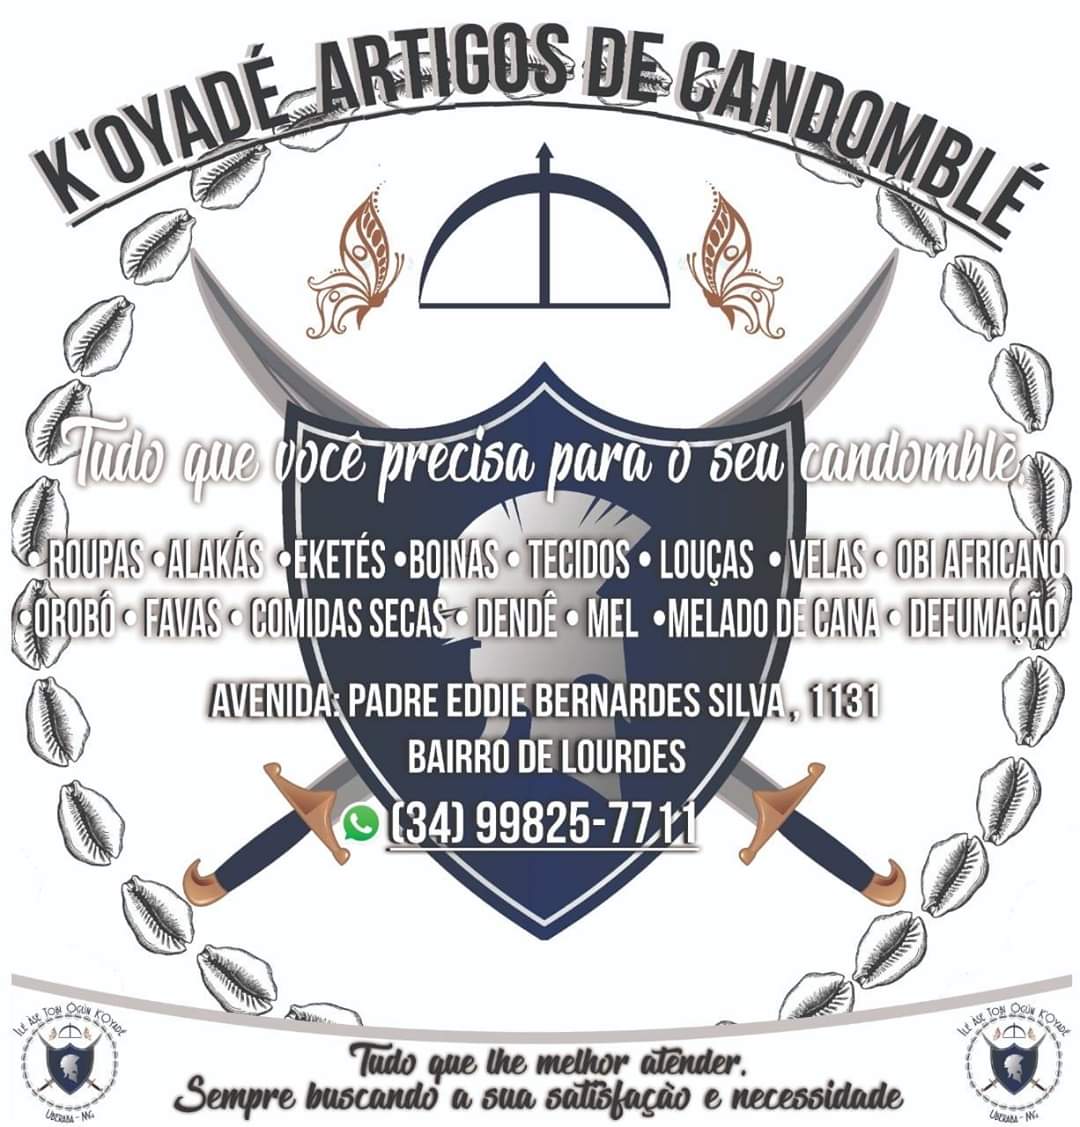 K'Oyádè Artigos de Candomblé